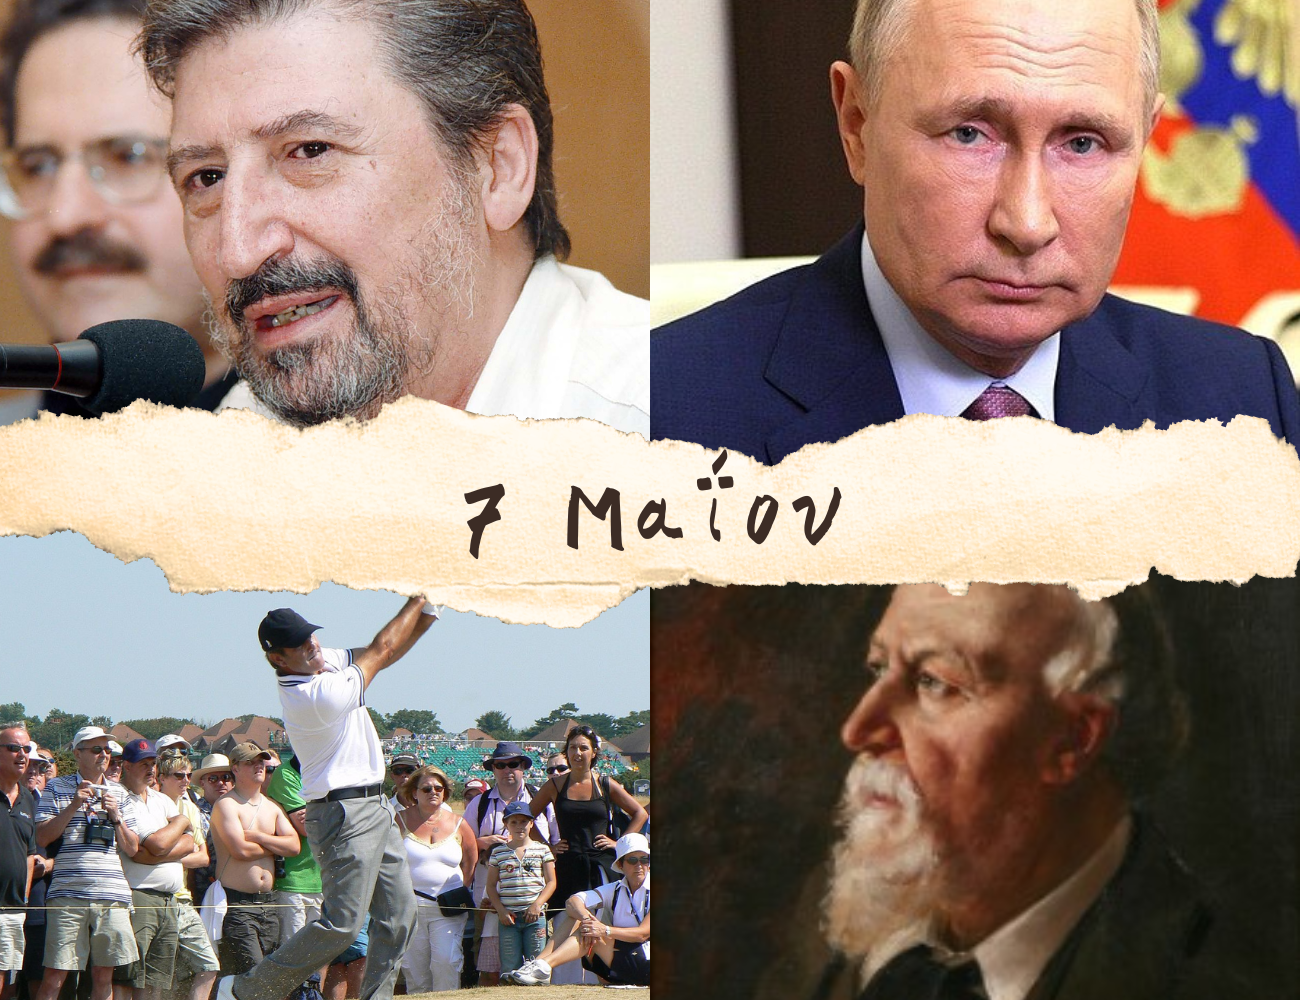 10 γεγονότα που συνέβησαν σαν σήμερα, 7 Μαΐου. Χάρρυ Κλυνν, Βλαντιμίρ Πούτιν και «SONY»